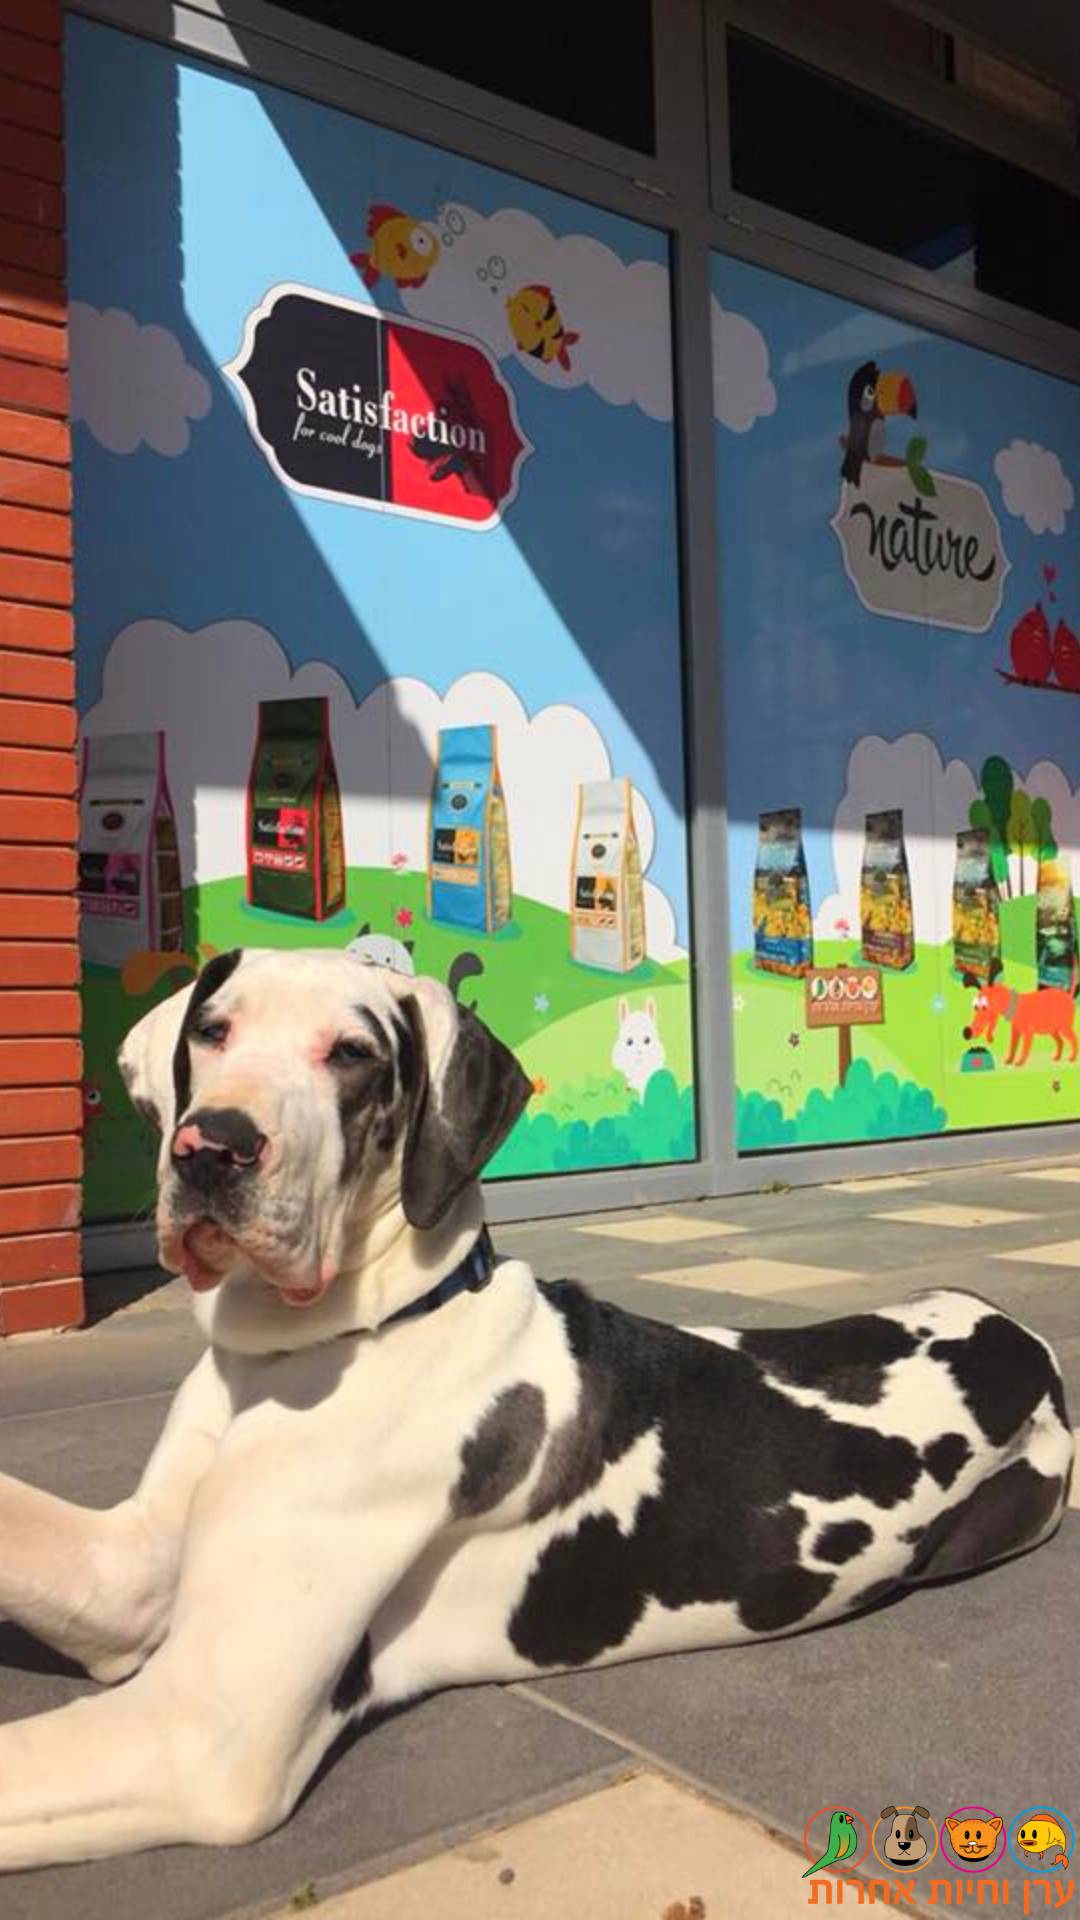 ברונו, כלב דני ענק שומר על החנות.